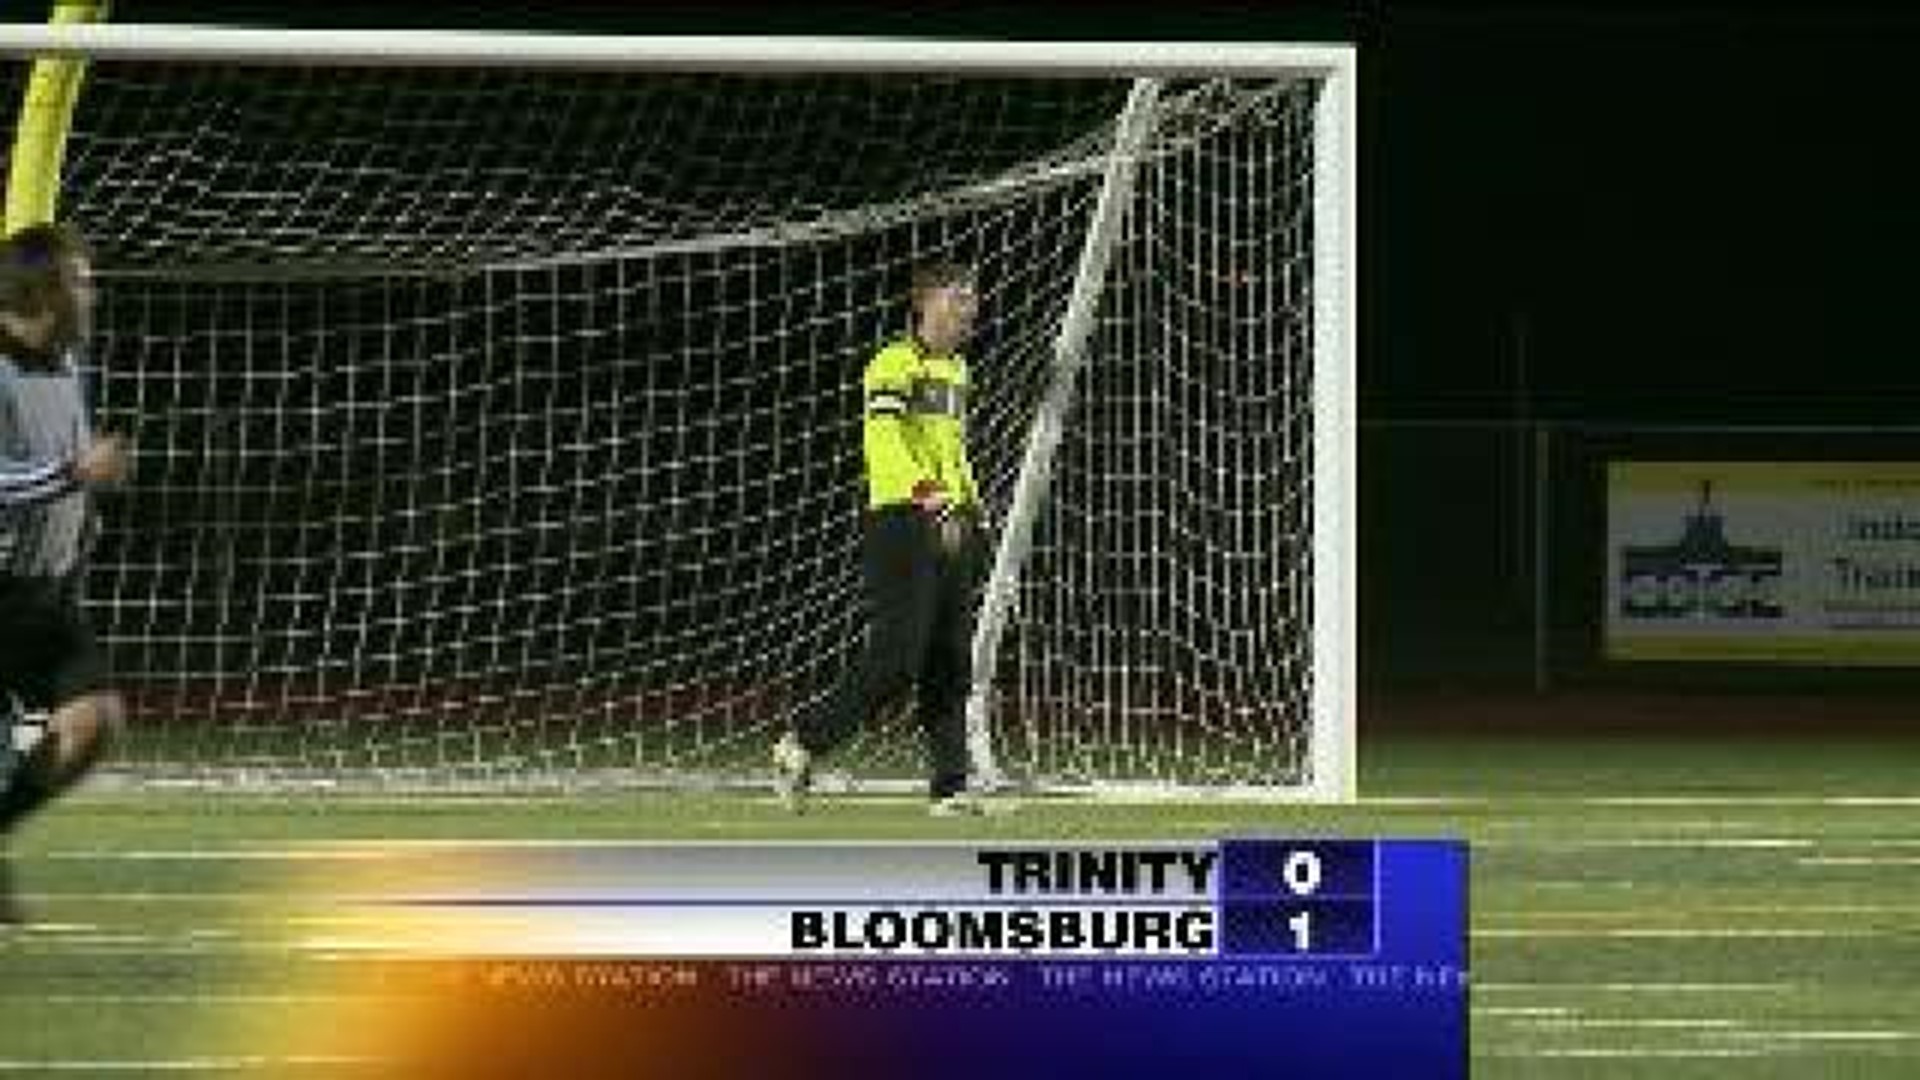 Bloomsburg vs. Trinity